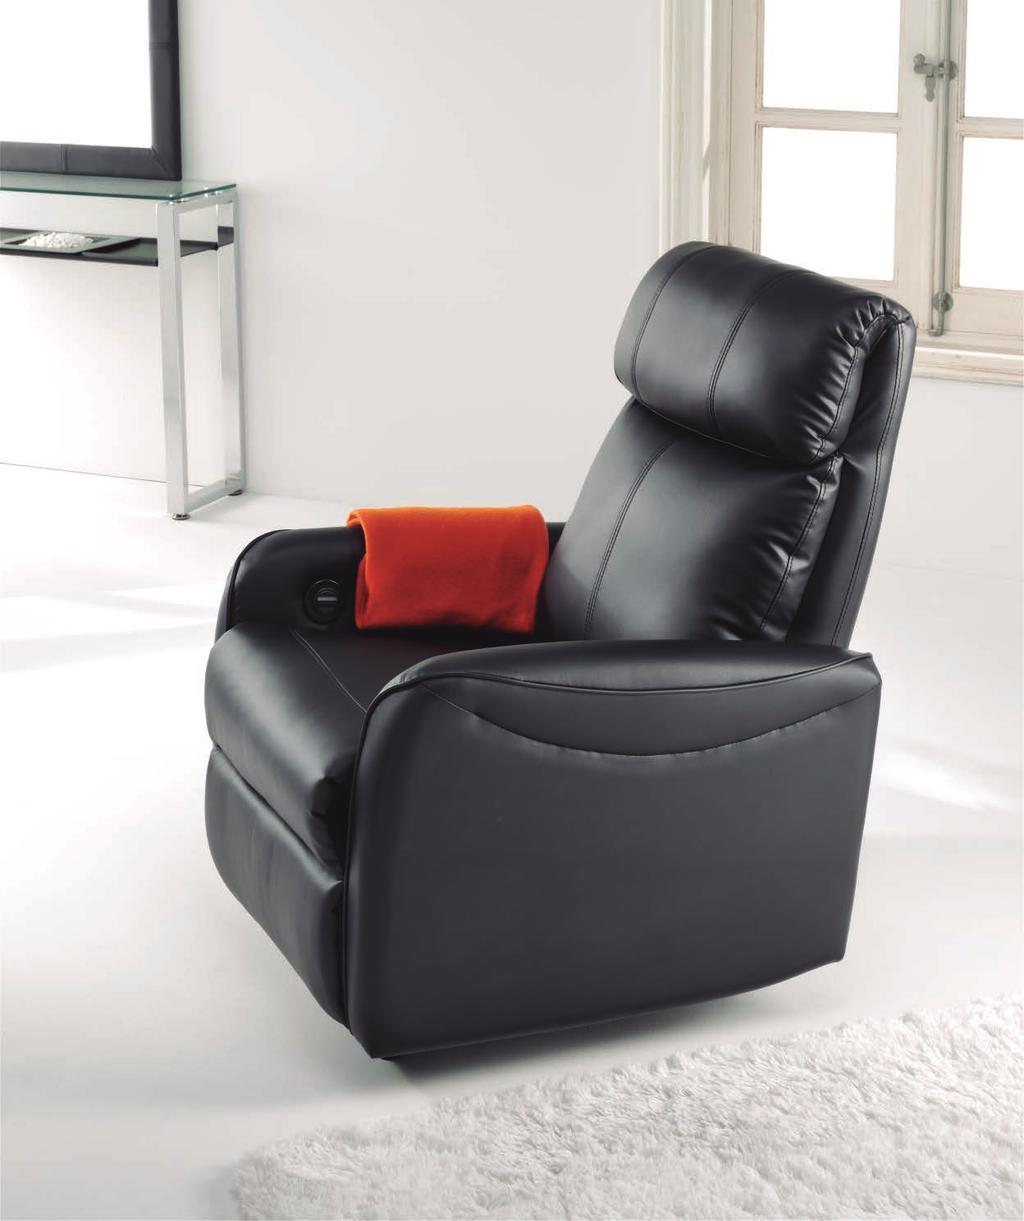 Gold El sillón relax Gold cuenta con un mecanismo eléctrico para realizar las funciones de extensión y